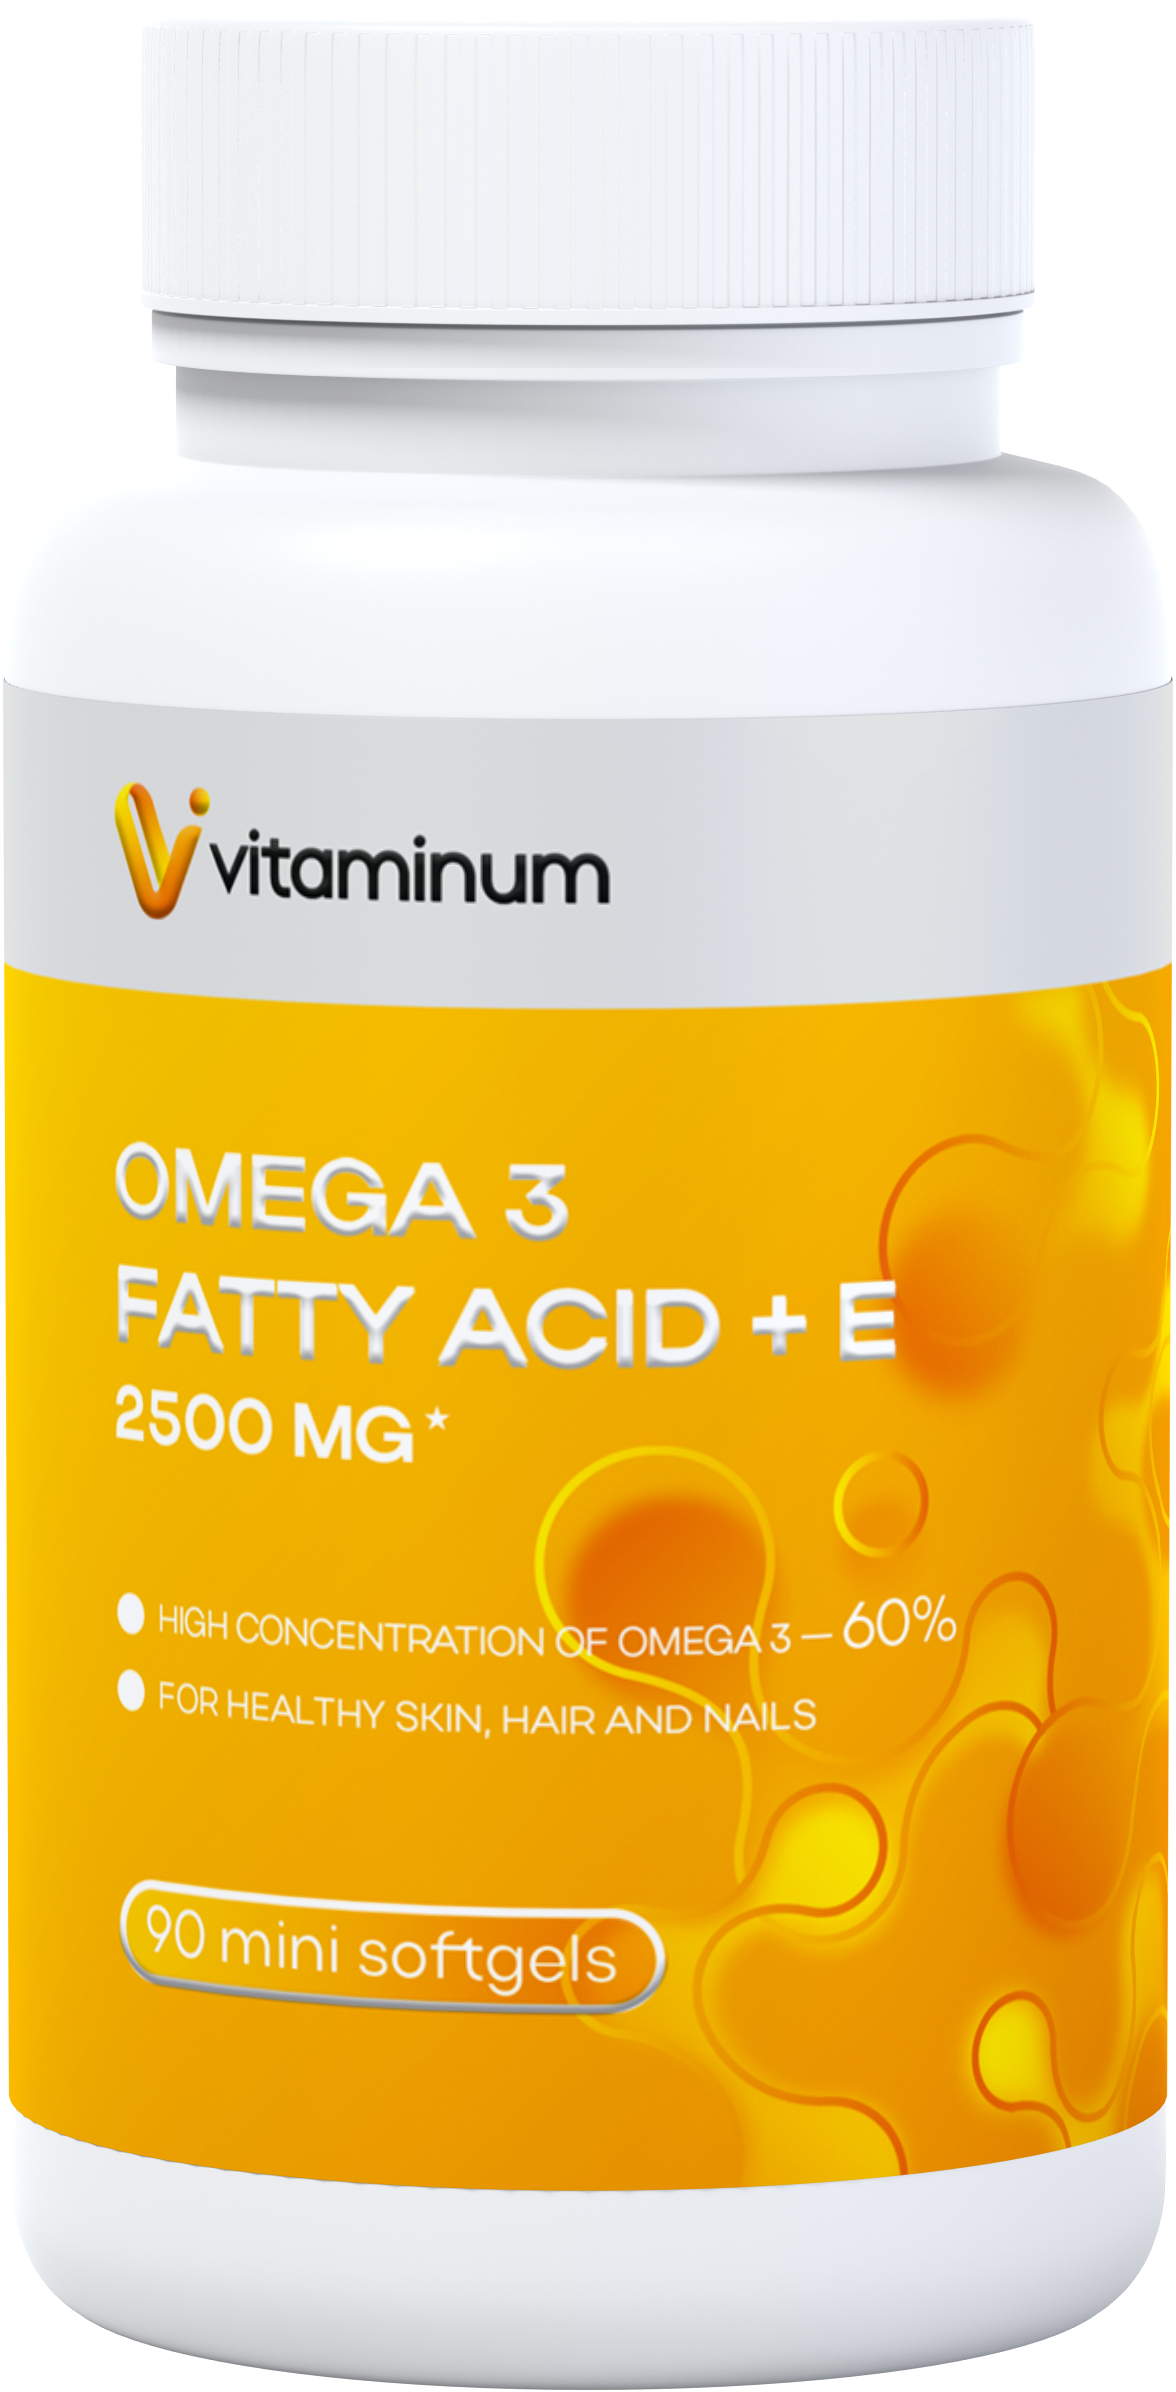  Vitaminum ОМЕГА 3 60% + витамин Е (2500 MG*) 90 капсул 700 мг  в Набережных Челнах